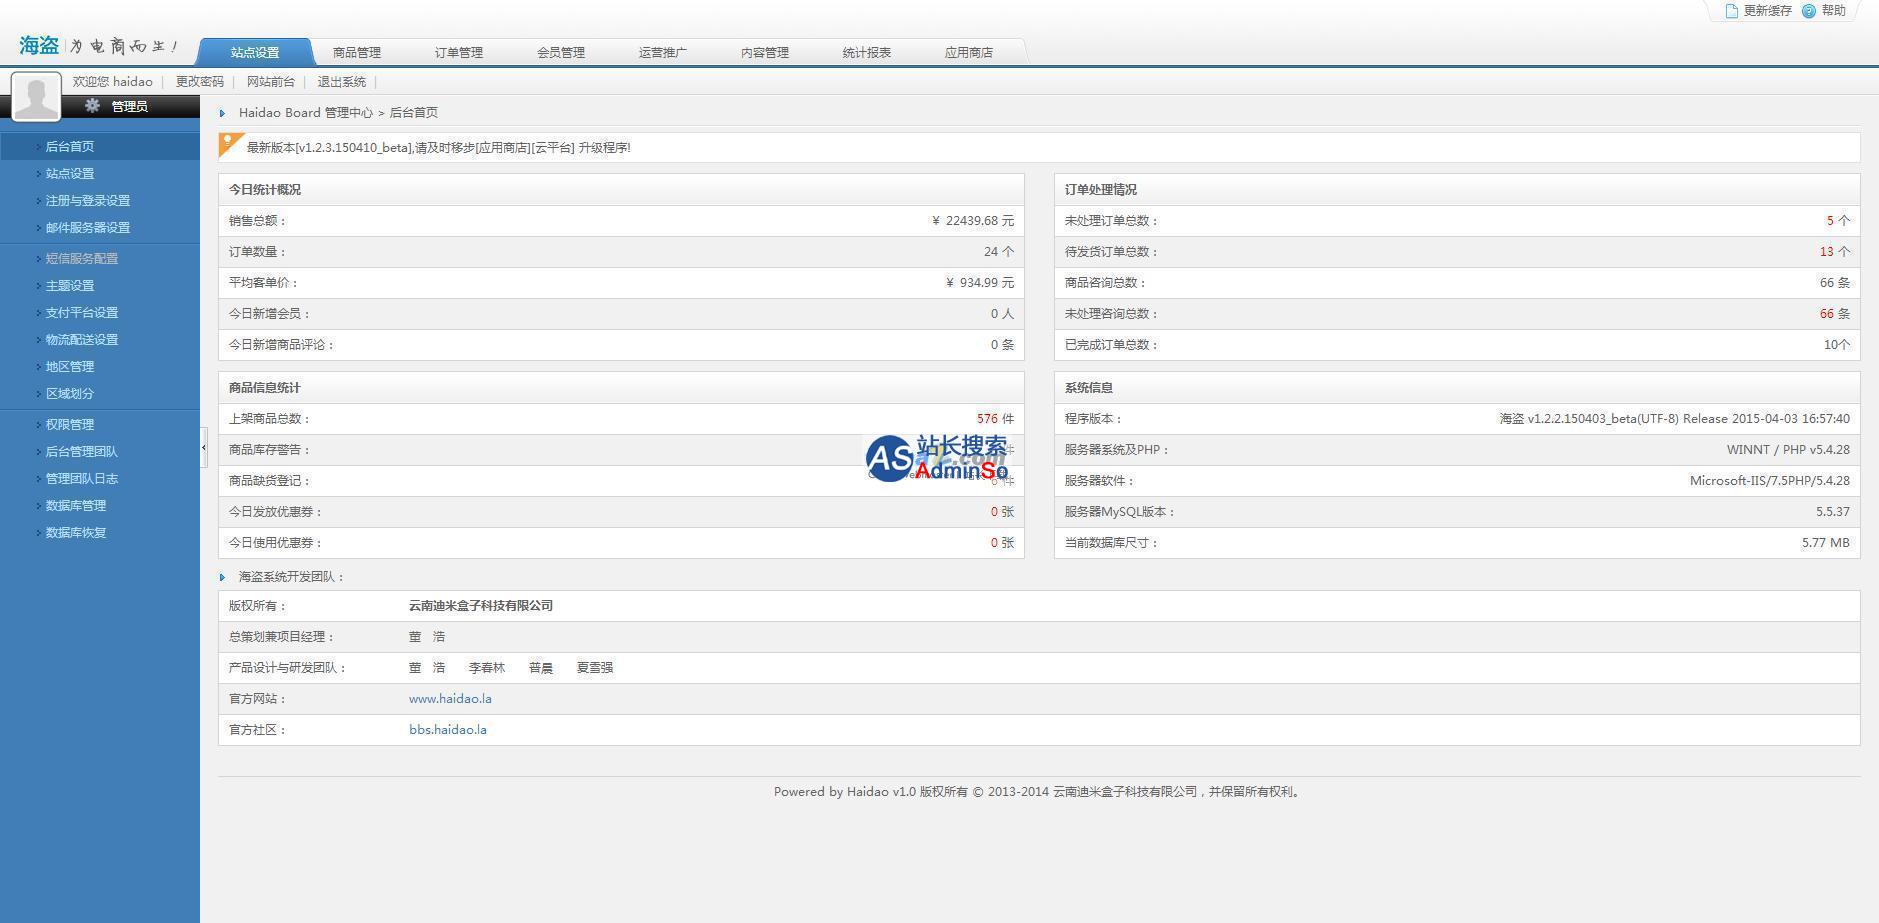 海盗云商(Haidao)开源网店系统 演示图片